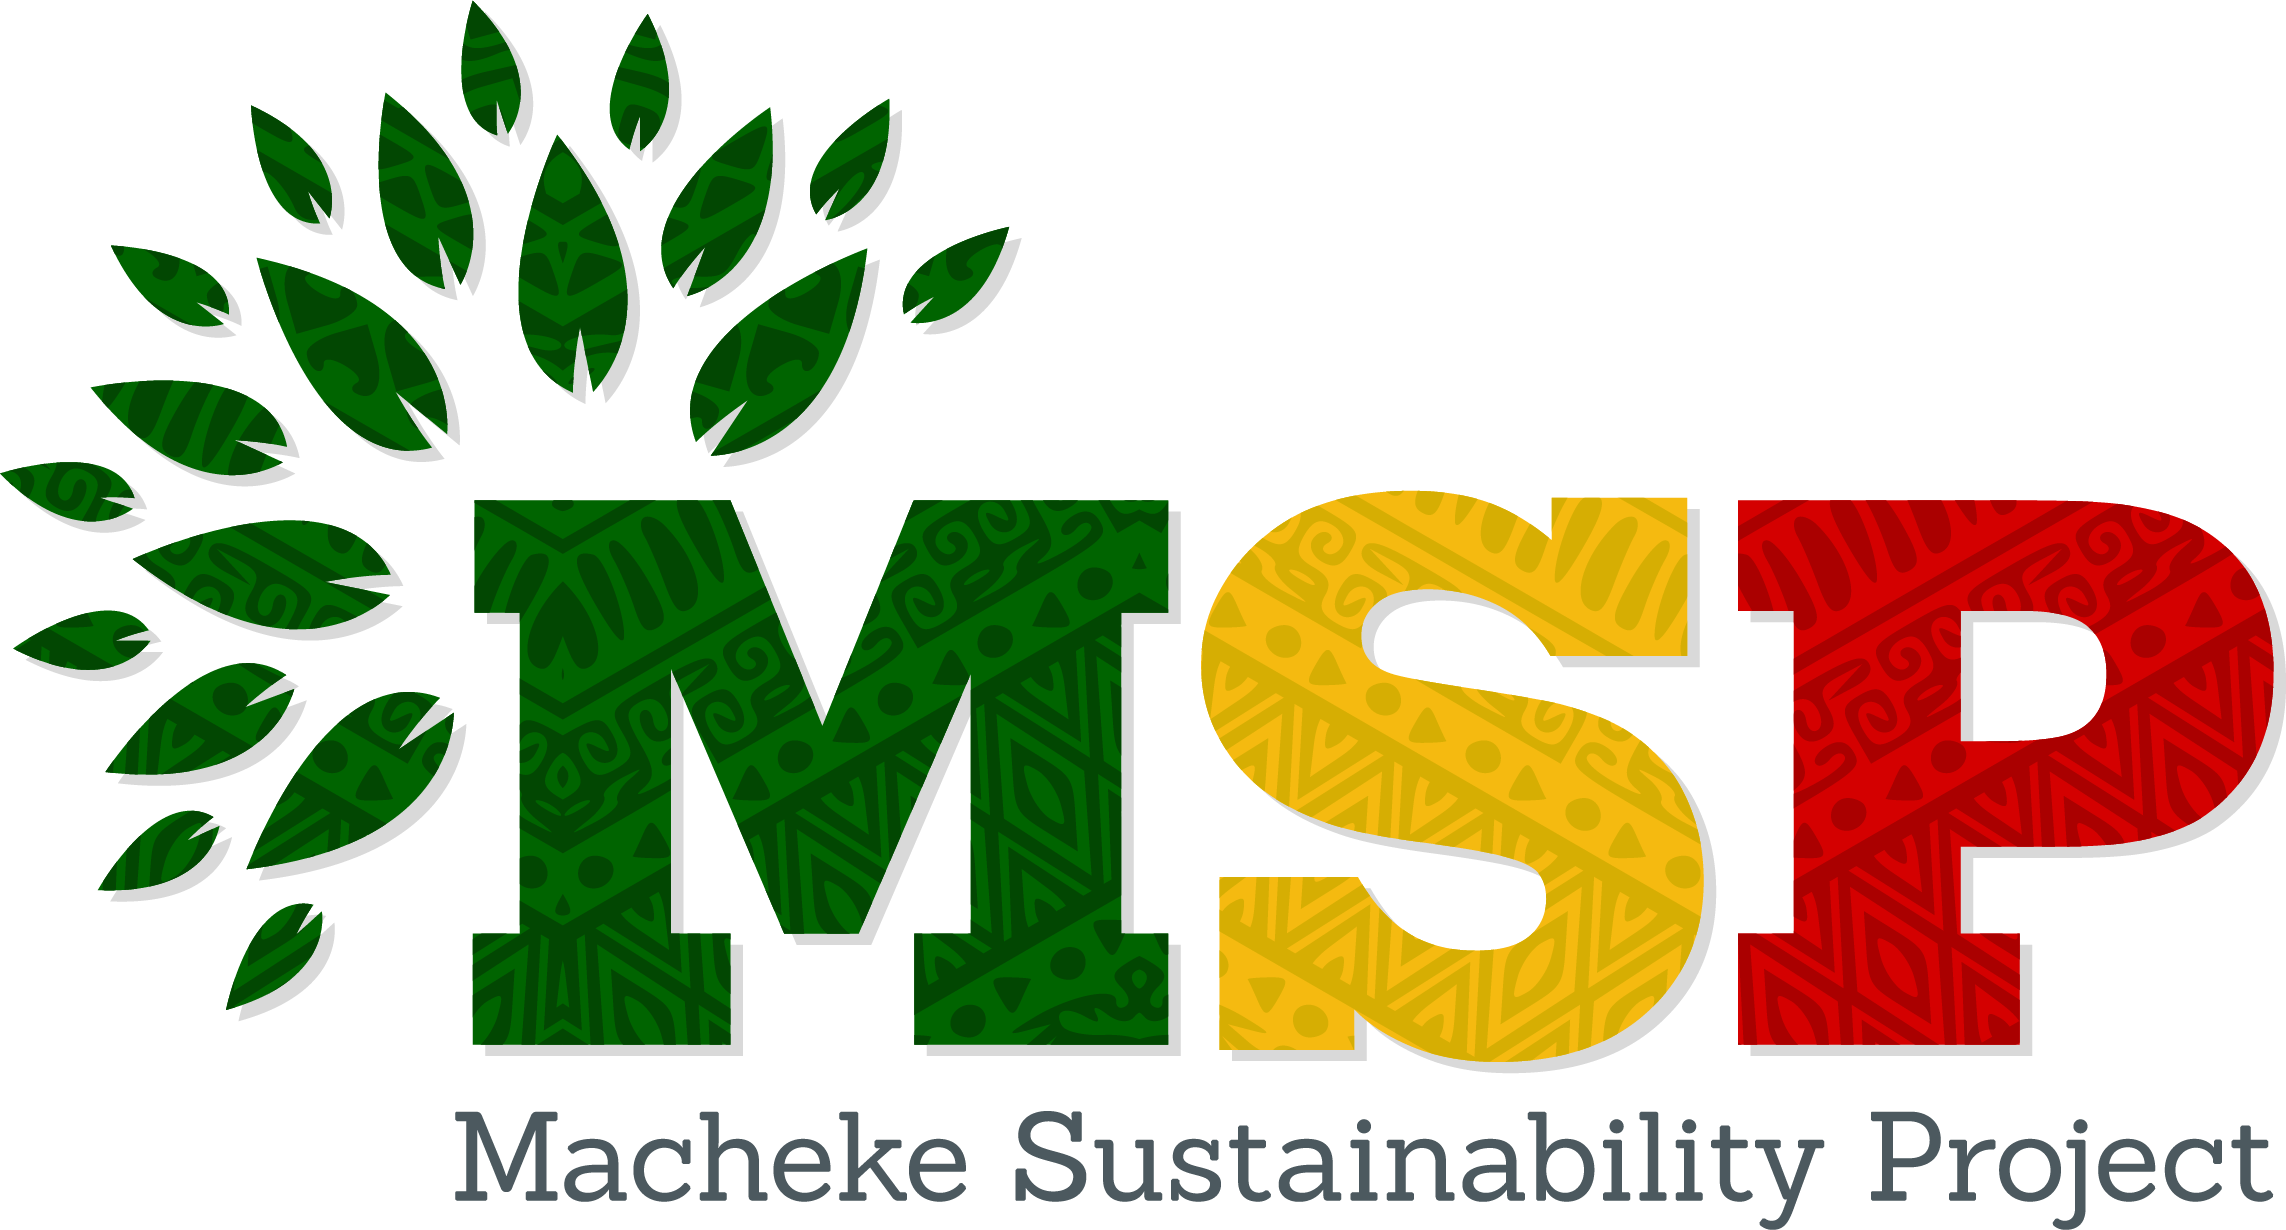 The Macheke Sustainability Project logo